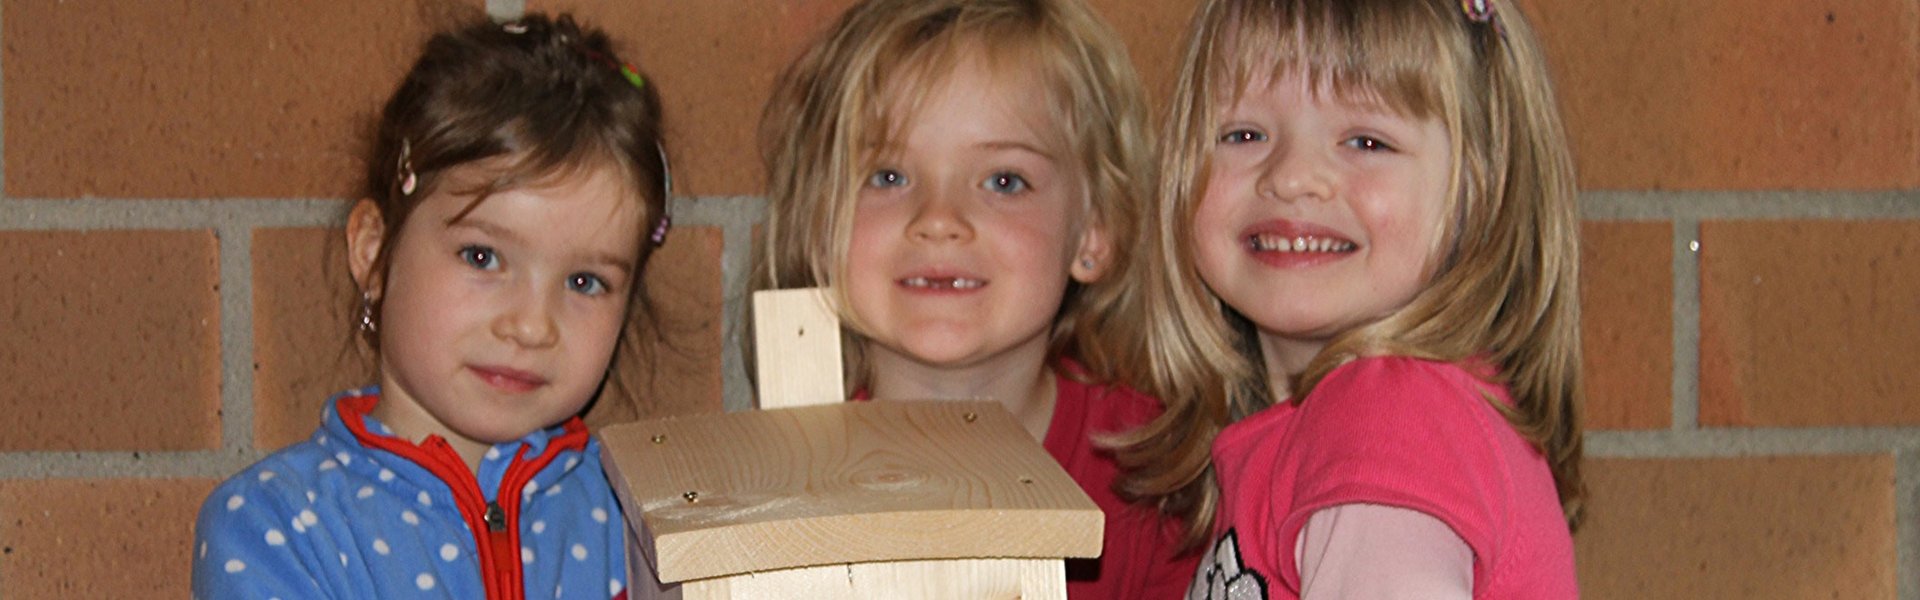 ProNatur Aktion: drei kleine Mädchen vom Kindergarten Stettfeld gemeinsam mit Vogelnistkästen